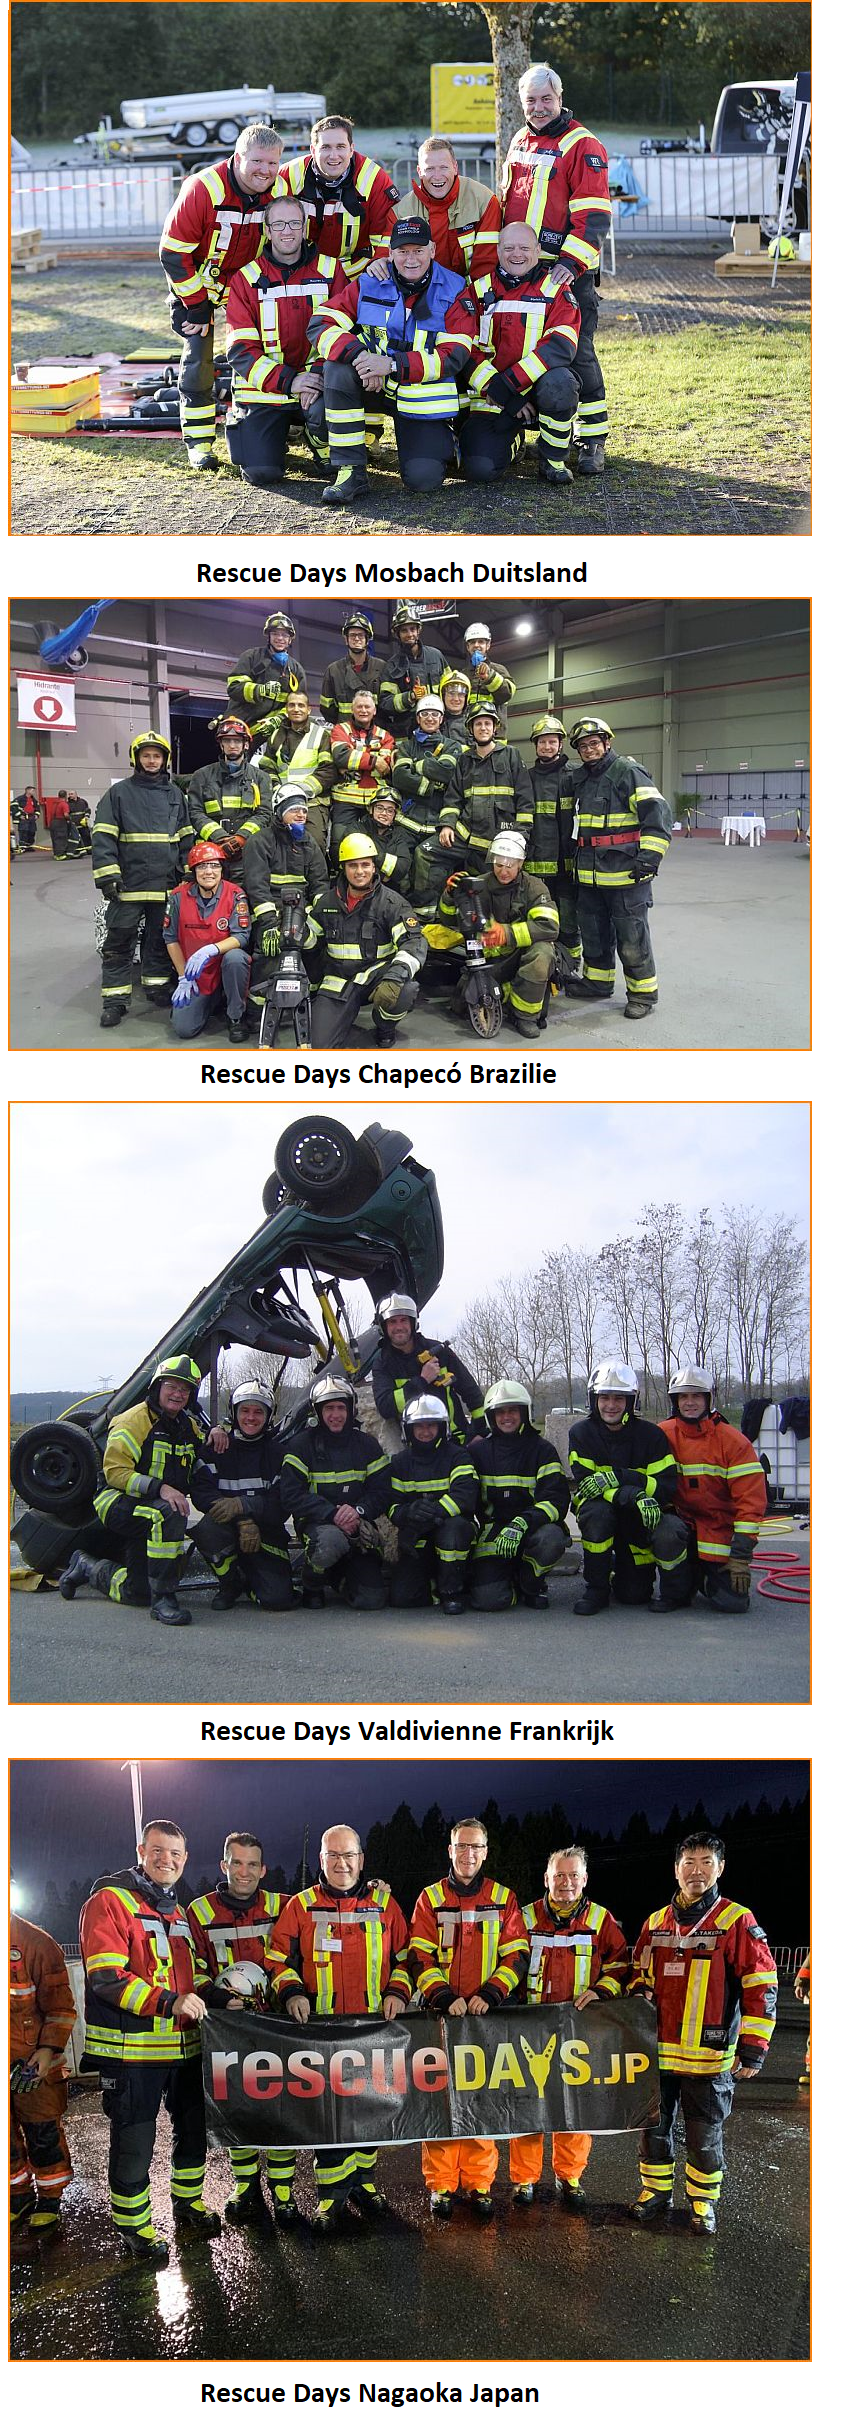 Rescue days pagina